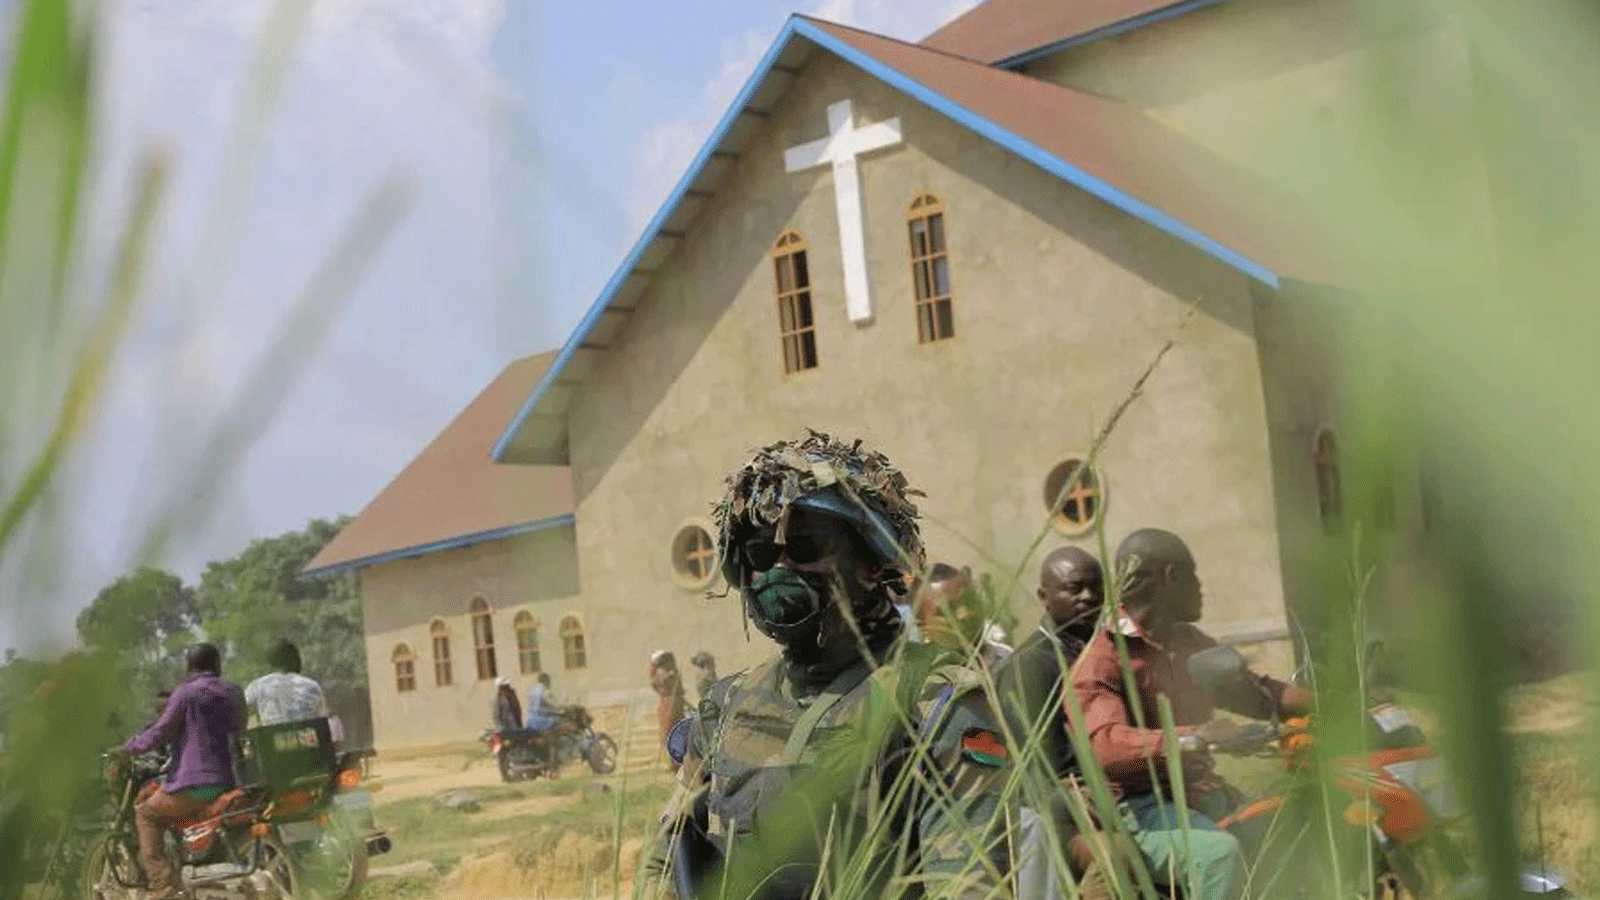 قوات حفظ السلام الملاوية في بعثة الأمم المتحدة MONUSCO تقف للحراسة خارج كنيسة إيمانويل بوتسيلي الكاثوليكية في بيني، بعد انفجار قنبلة بدائية الصنع في 27 حزيران/يونيو 2021